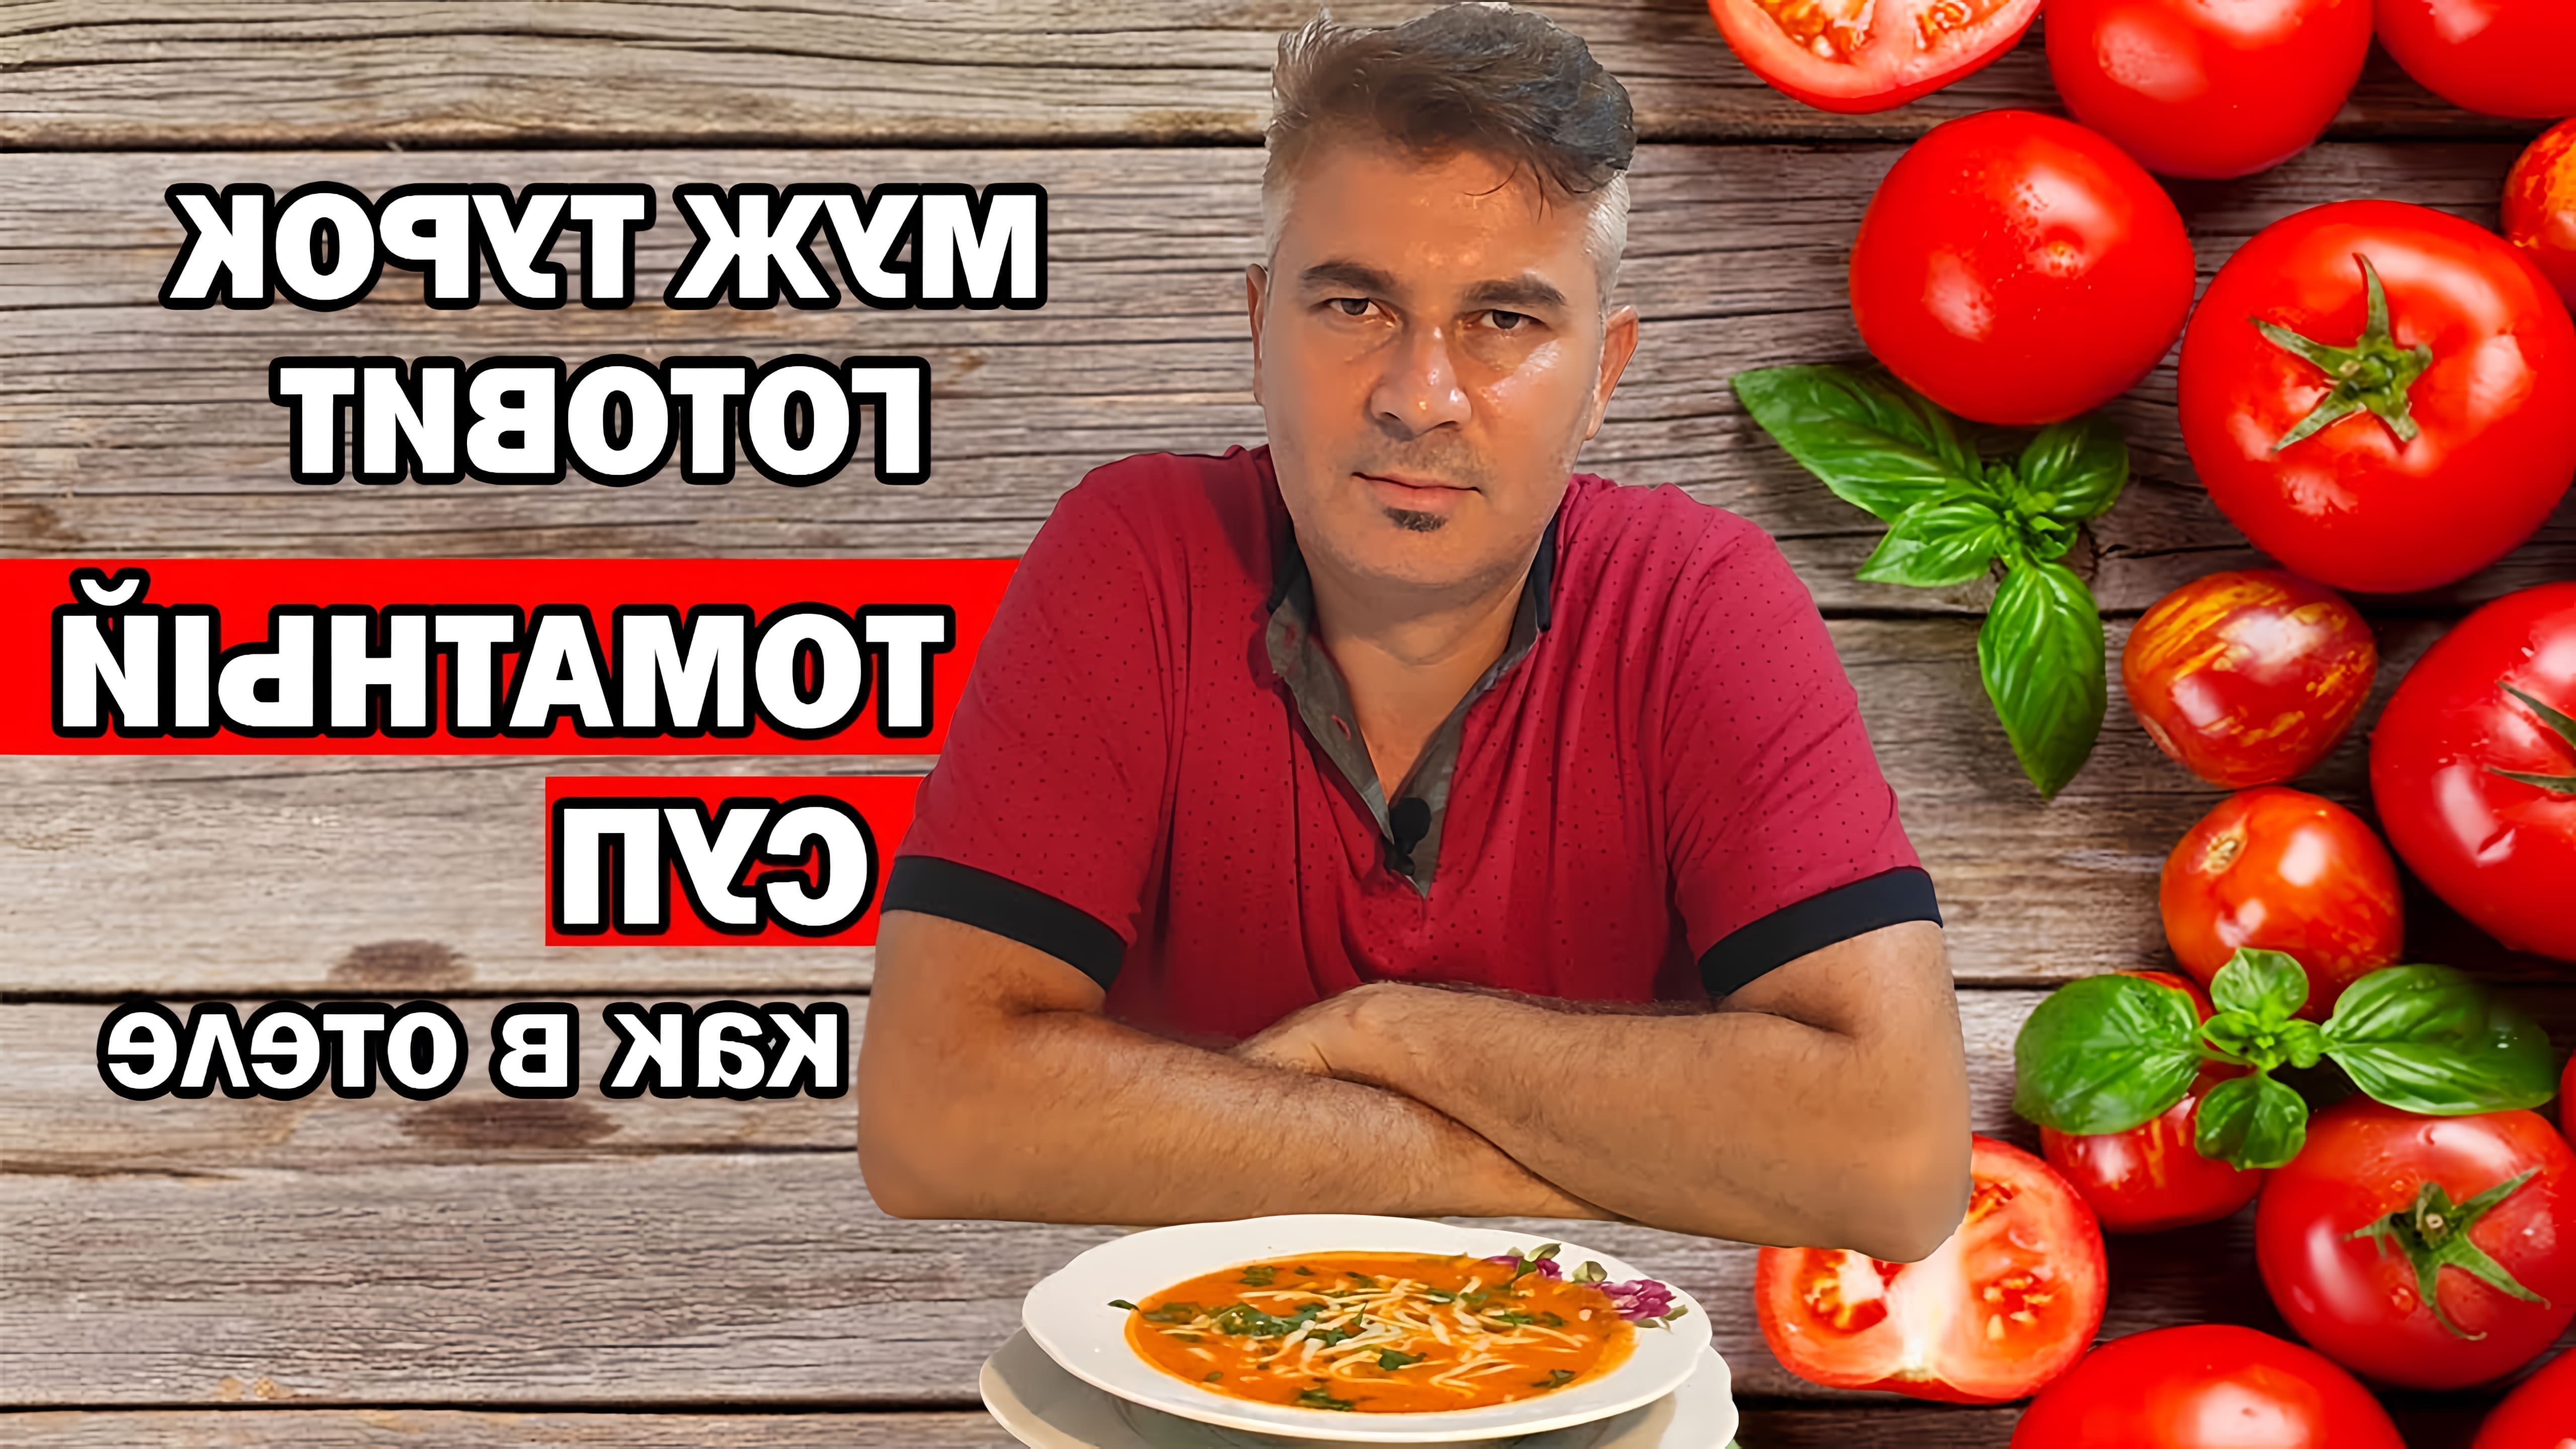 В этом видео турецкий мужчина готовит томатный суп, который он называет "Domates çorbası"